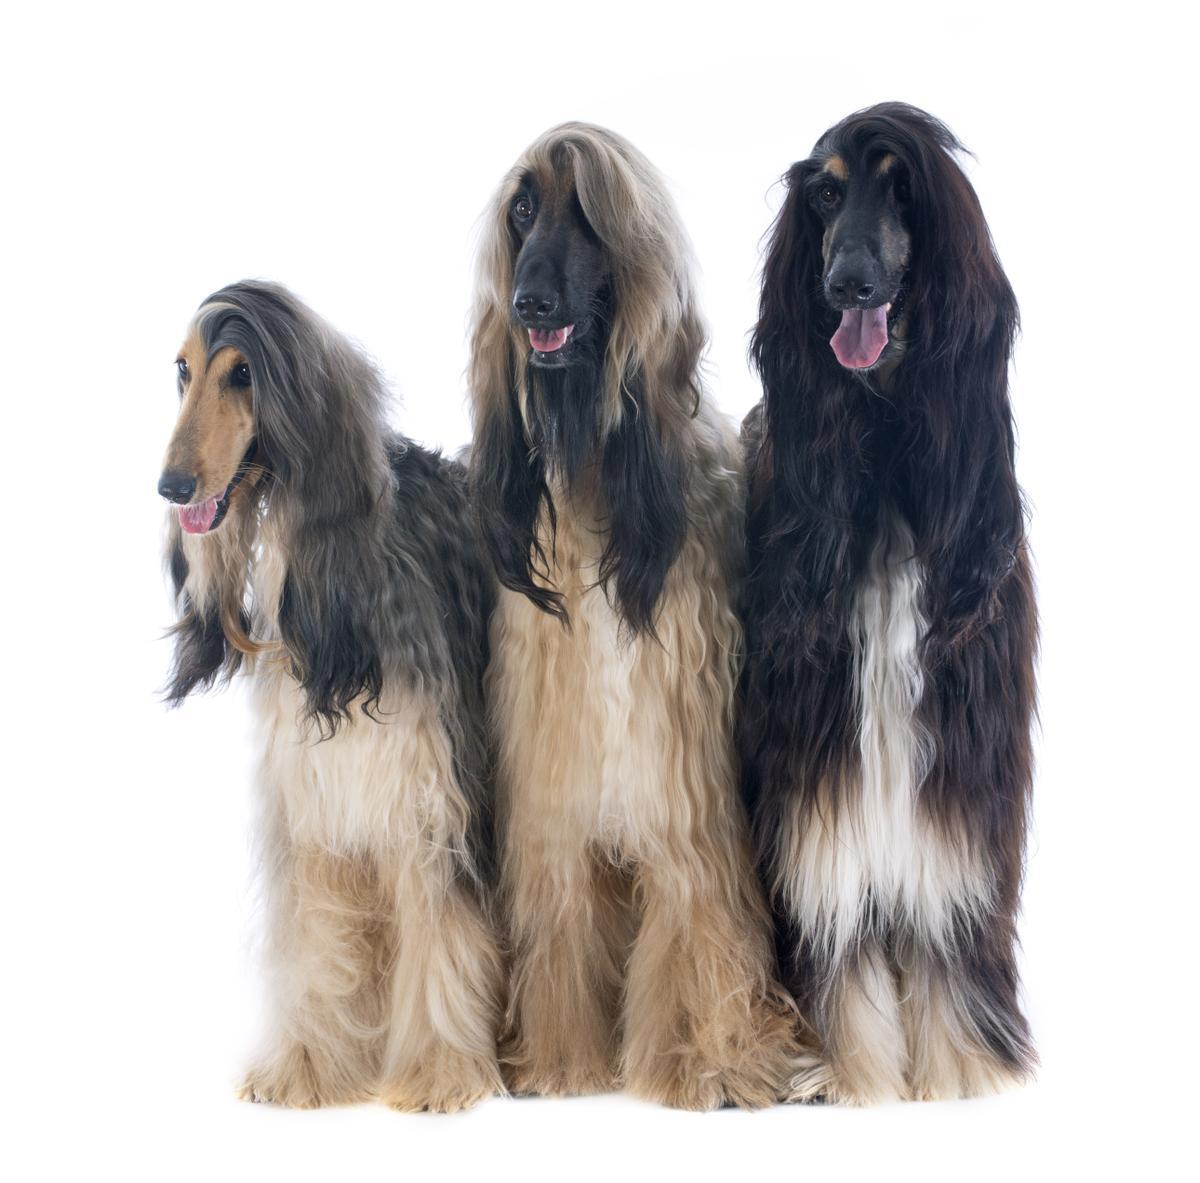 El Afghan Hound es una de las razas de perros más caras en España